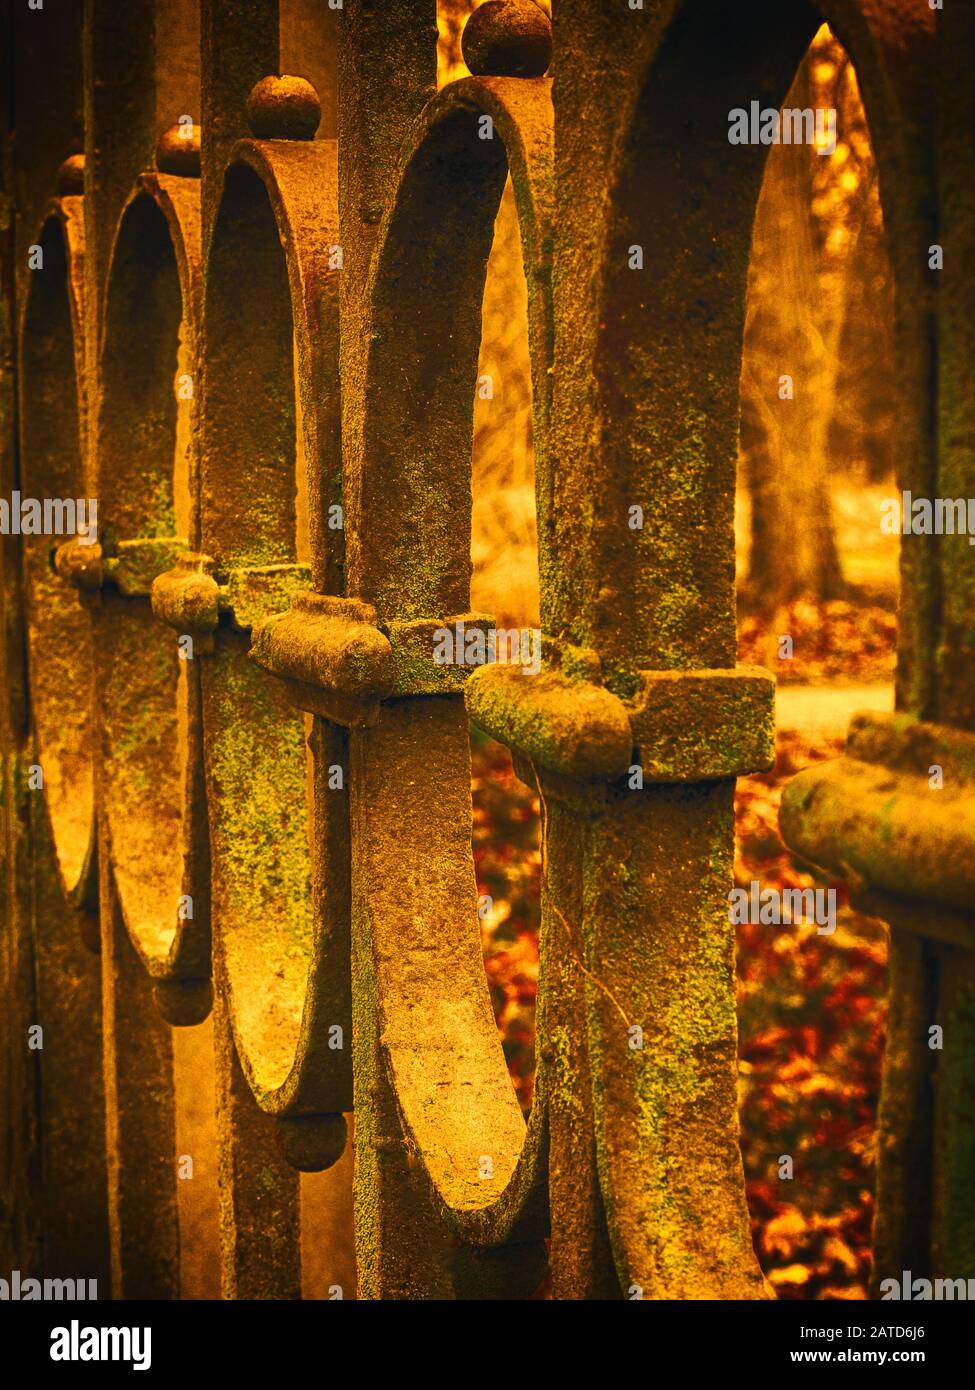 Golden et vieille clôture en fer Banque D'Images